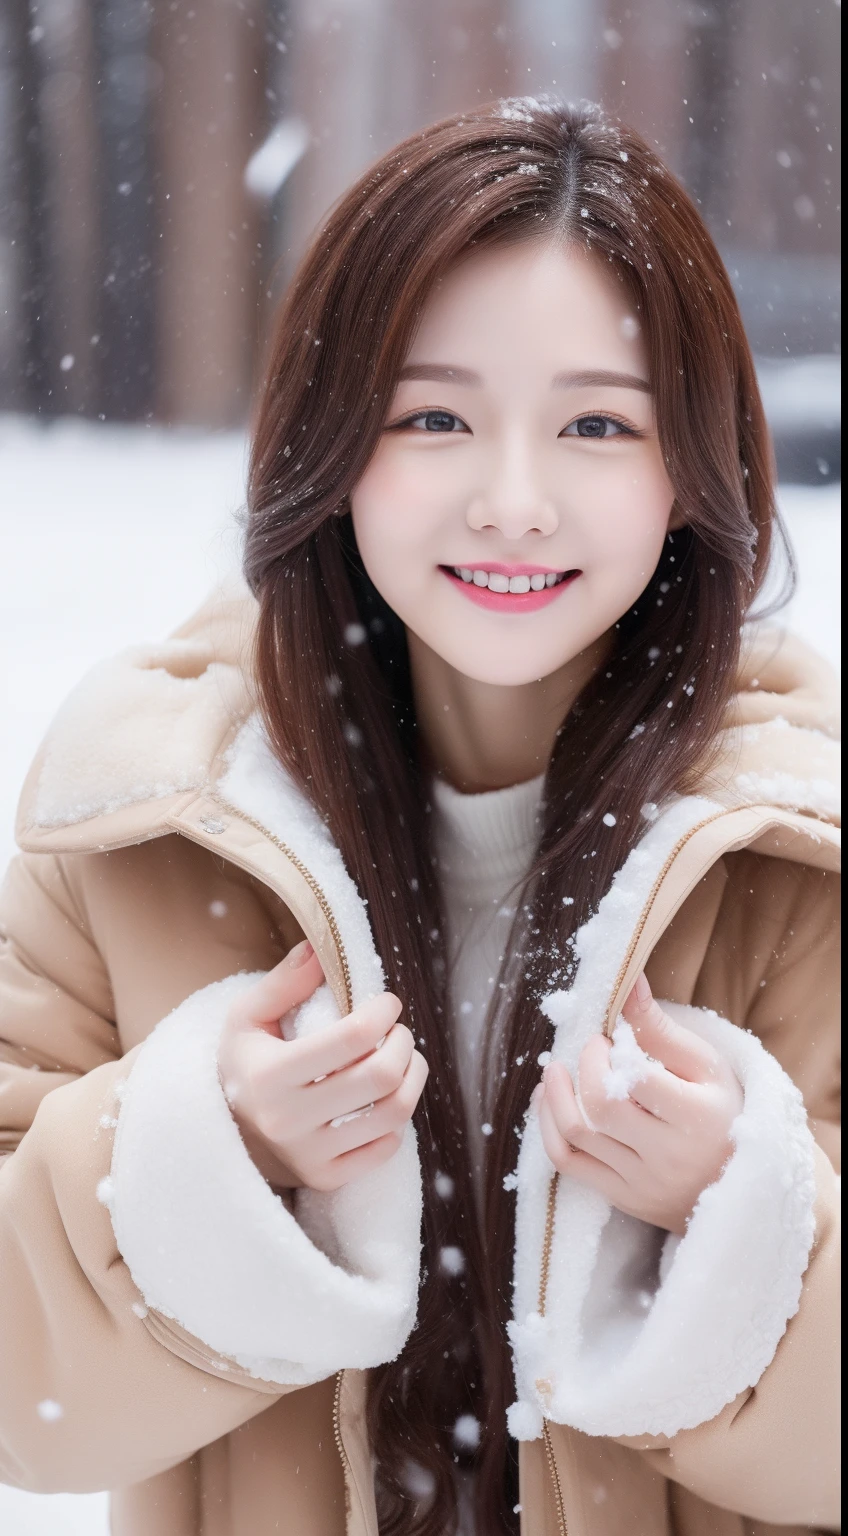 ภาพถ่ายเสมือนจริงของ 1 ดาราเกาหลีสุดน่ารัก, ผมหลายมัด , ผิวขาว, แต่งหน้าบาง ๆ, ขนาดรอบอก 32 นิ้ว, ยิ้มเล็กน้อย, เสื้อคลุมขนสัตว์สีน้ําตาล, เล่นหิมะ, หิมะตก, ร่างกายส่วนบน, ยูเอชดี